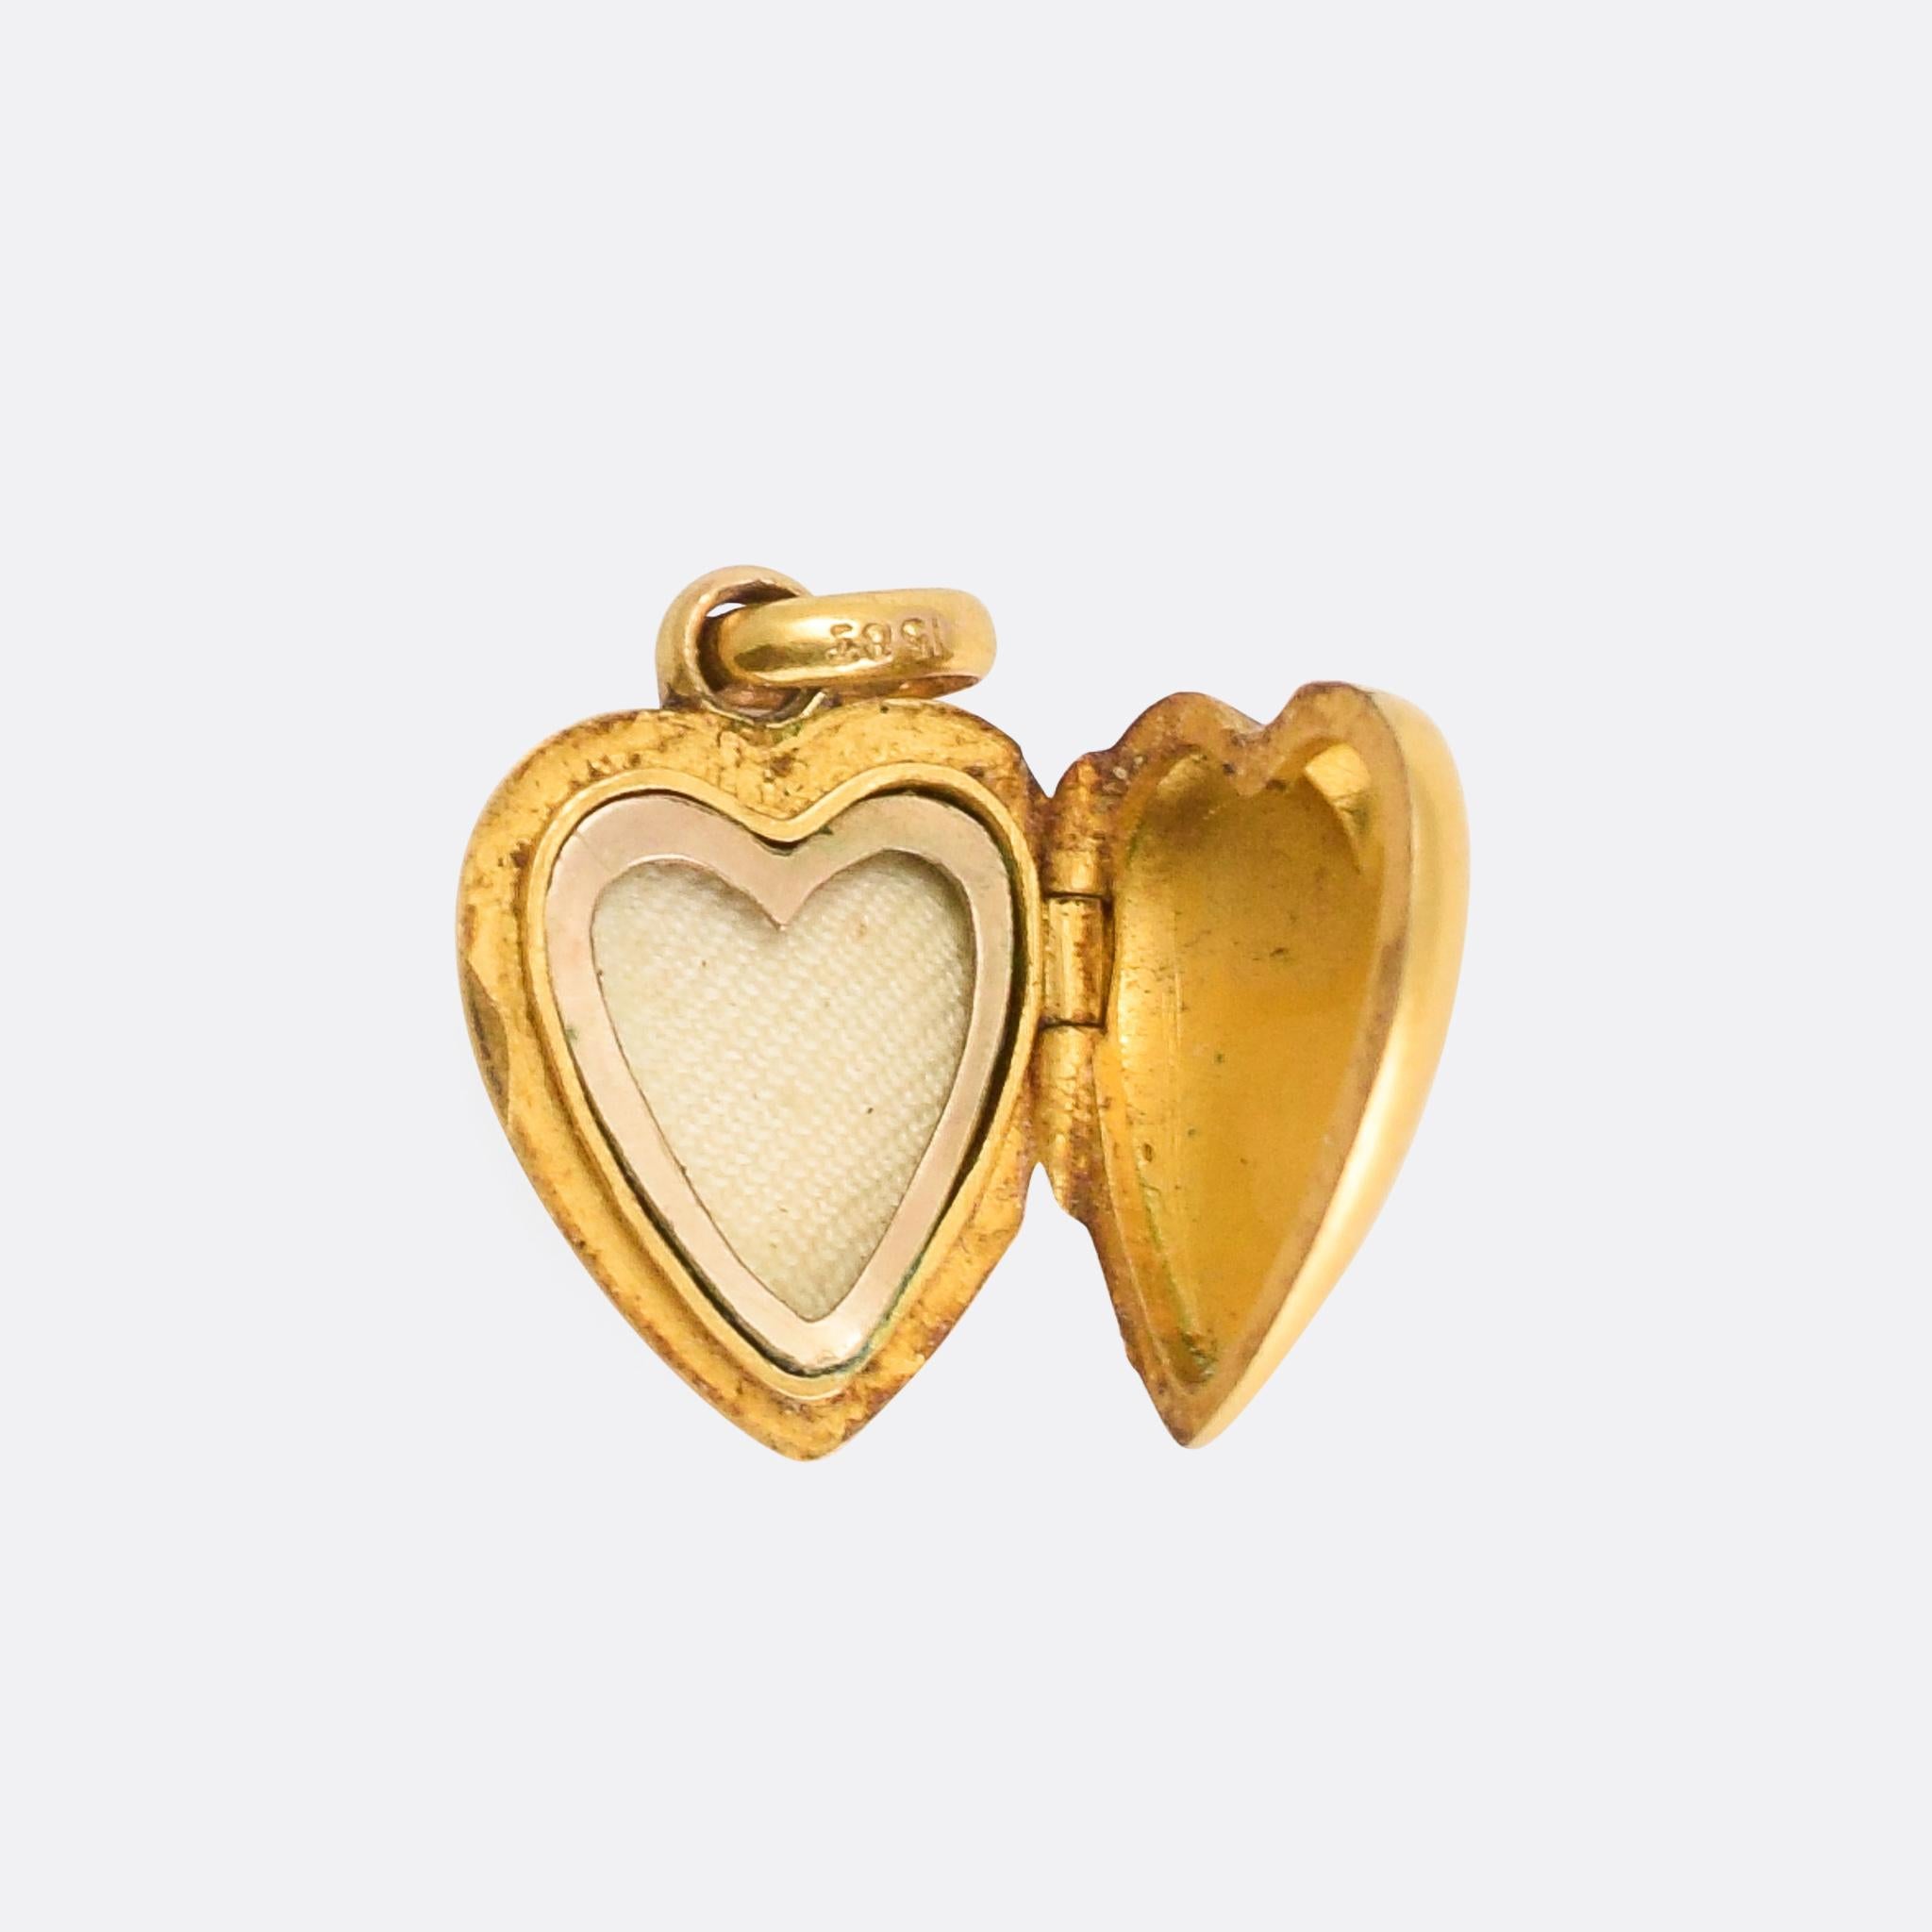 Women's Antique Edwardian Diamond Puffed Heart Locket